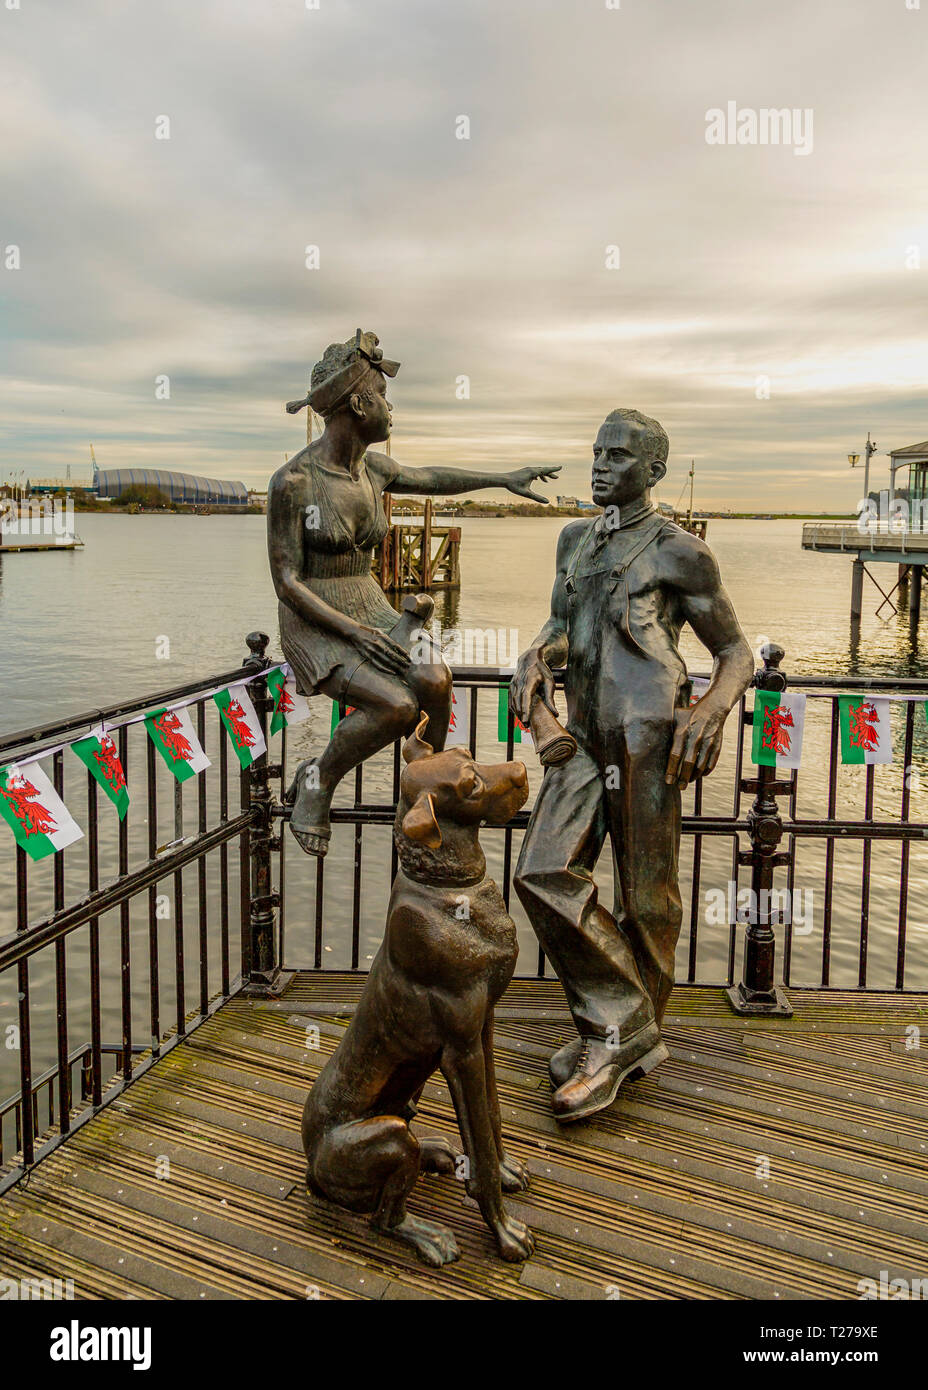 Les gens comme nous les statues sur la promenade, la baie de Cardiff, Pays de Galles. Banque D'Images